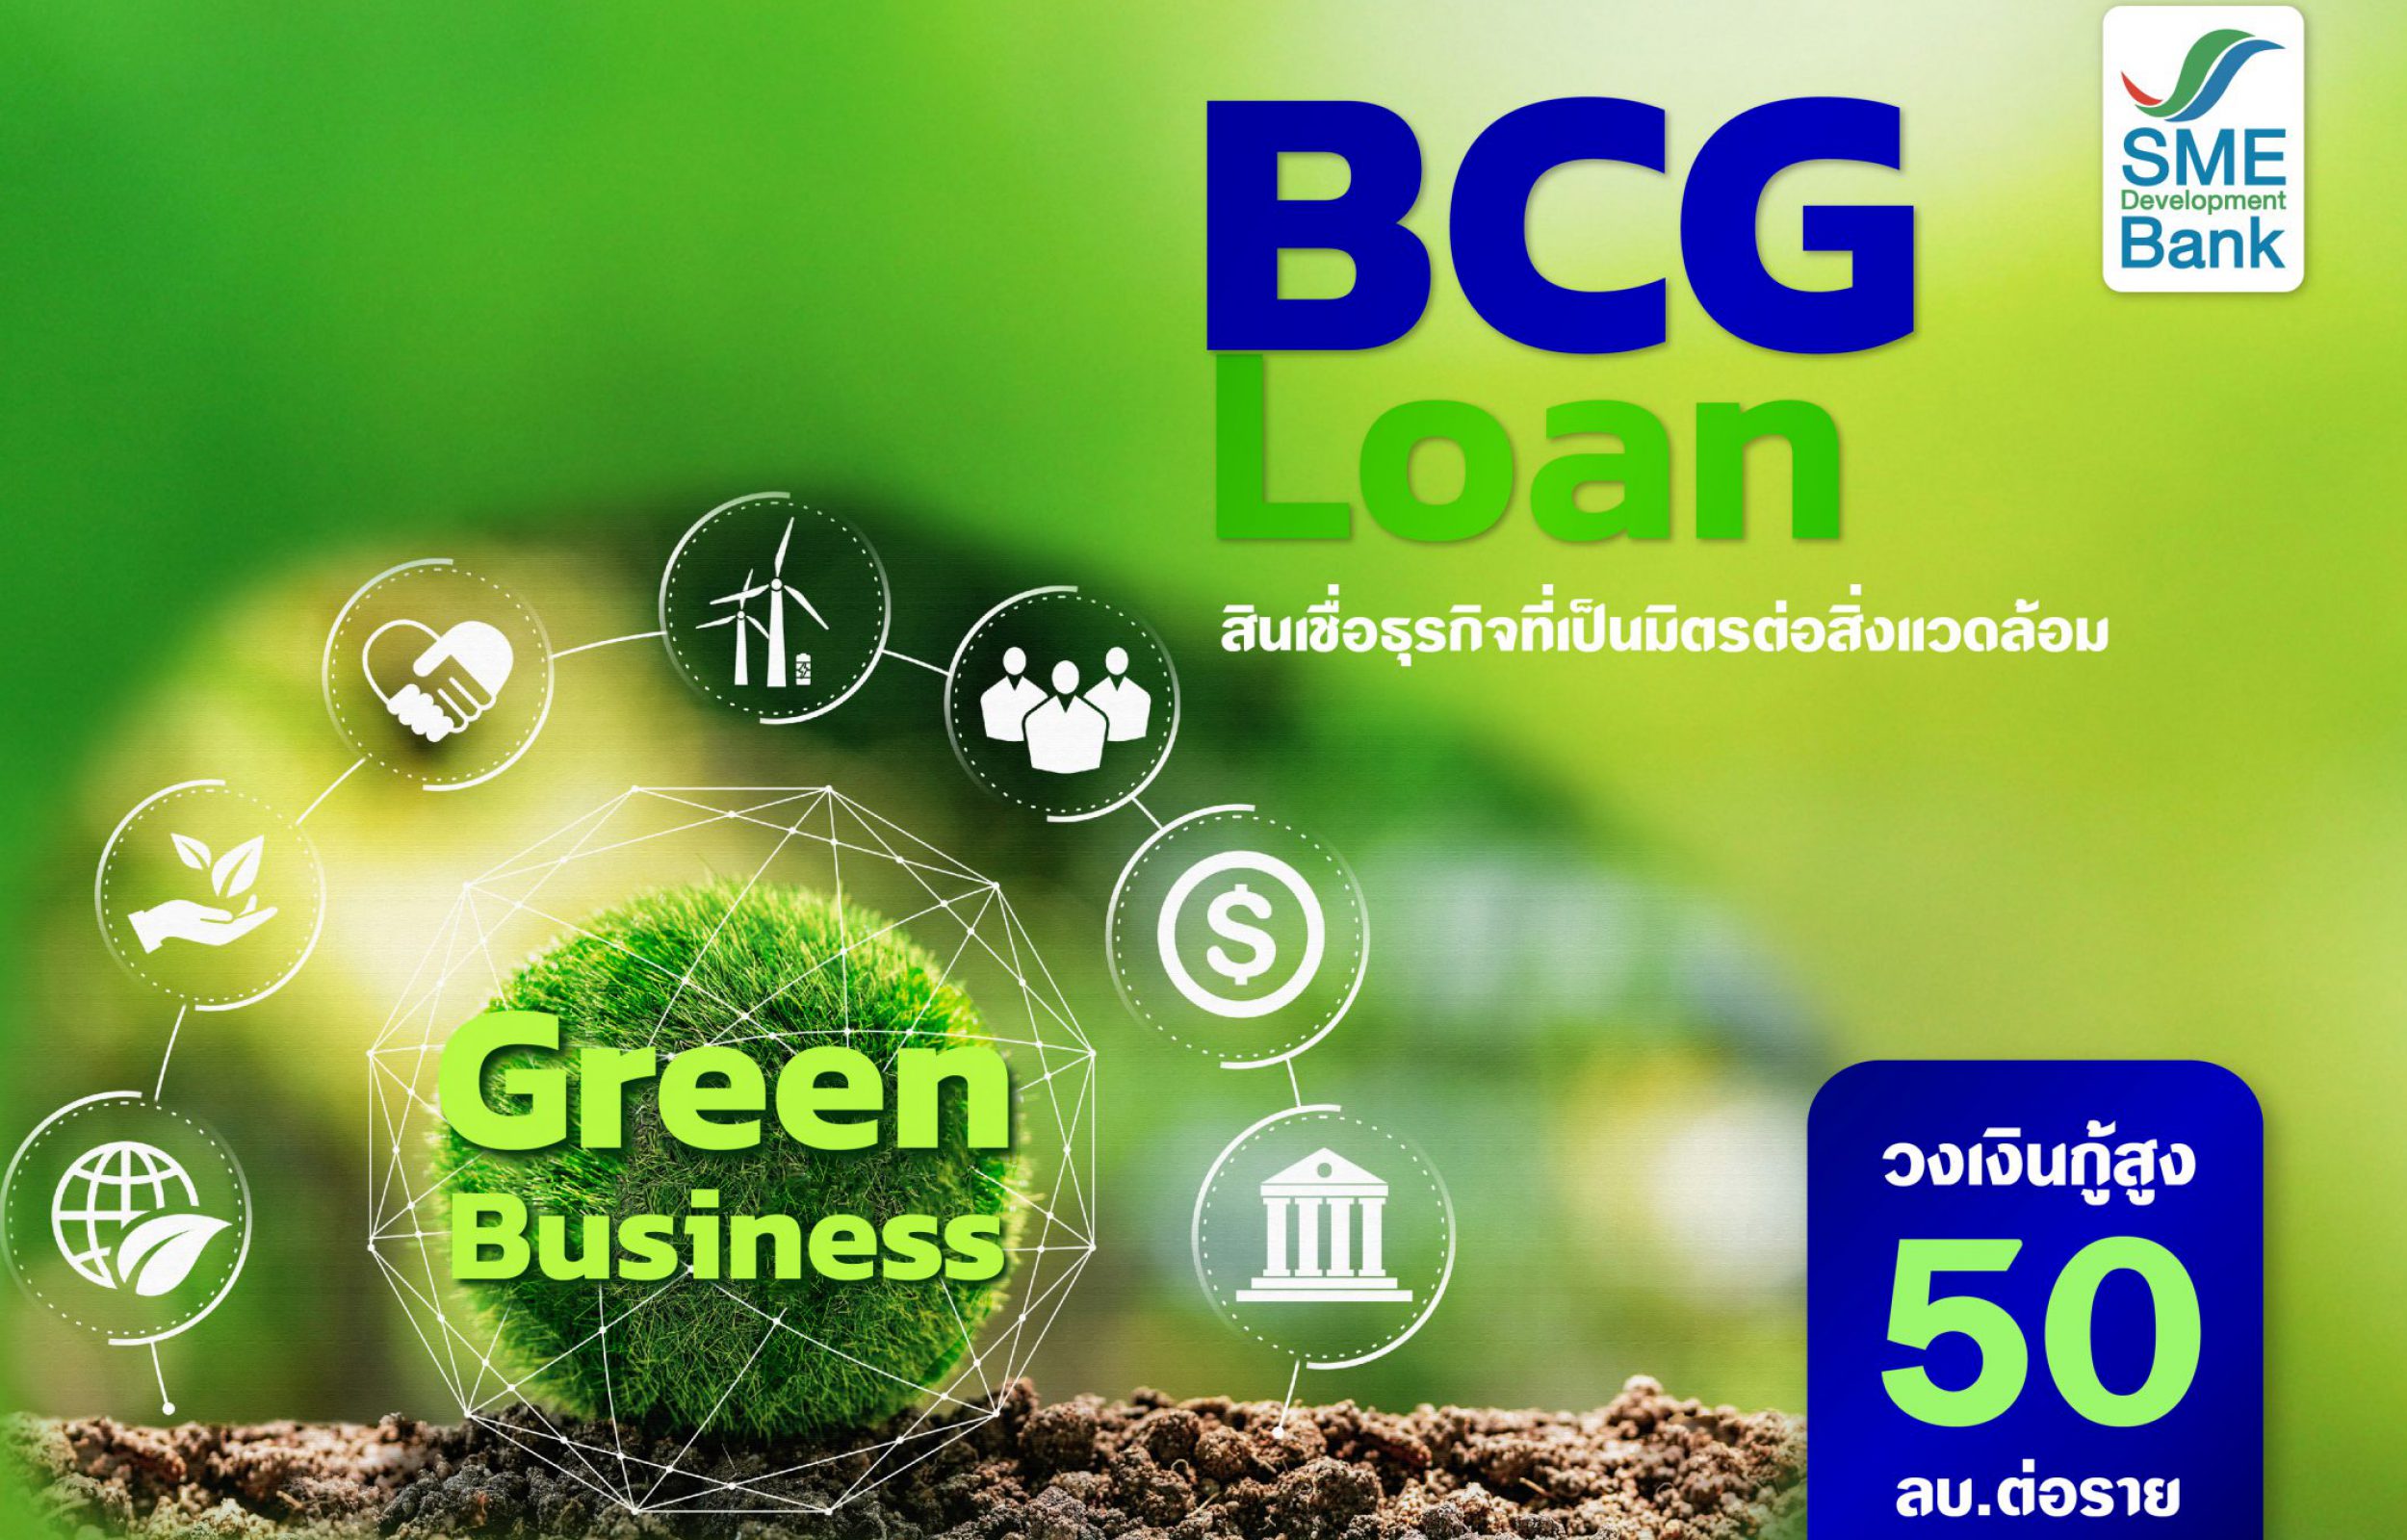 BCG Loan สินเชื่อธุรกิจที่เป็นมิตรต่อสิ่งแวดล้อม